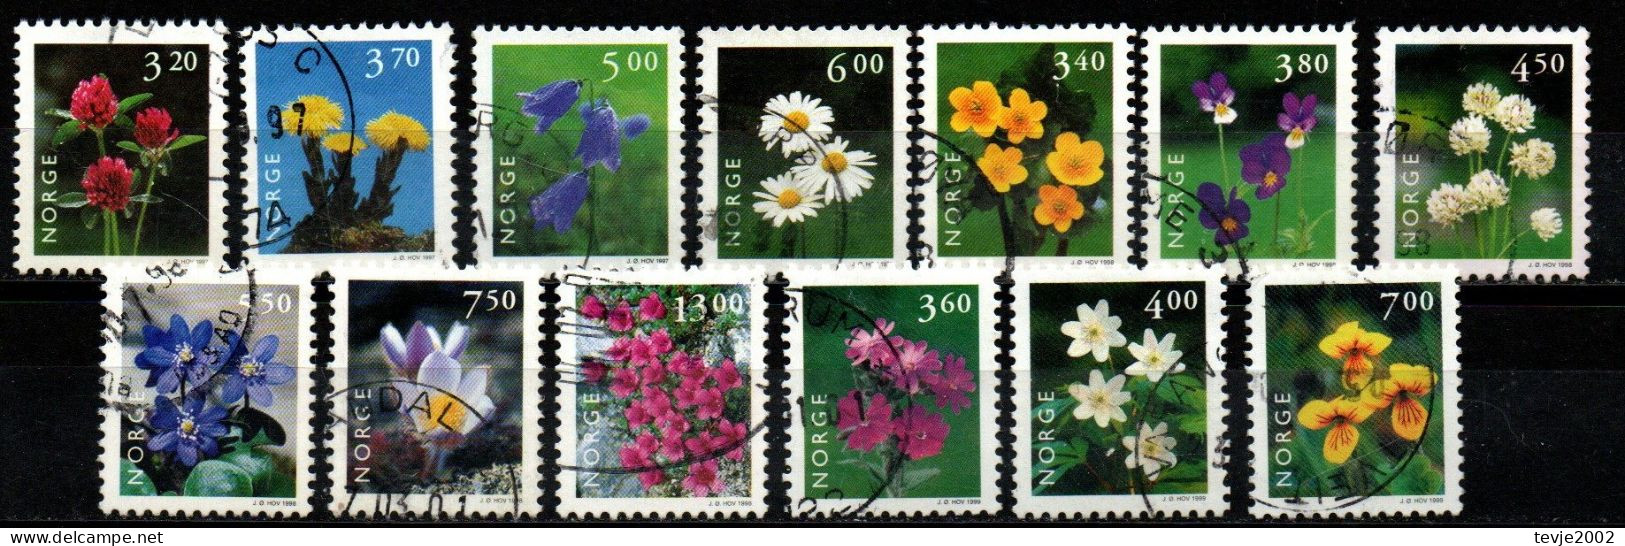 Norwegen Norge 1997 - 1999 - Freimarken Blumen - Gestempelt Used - Used Stamps